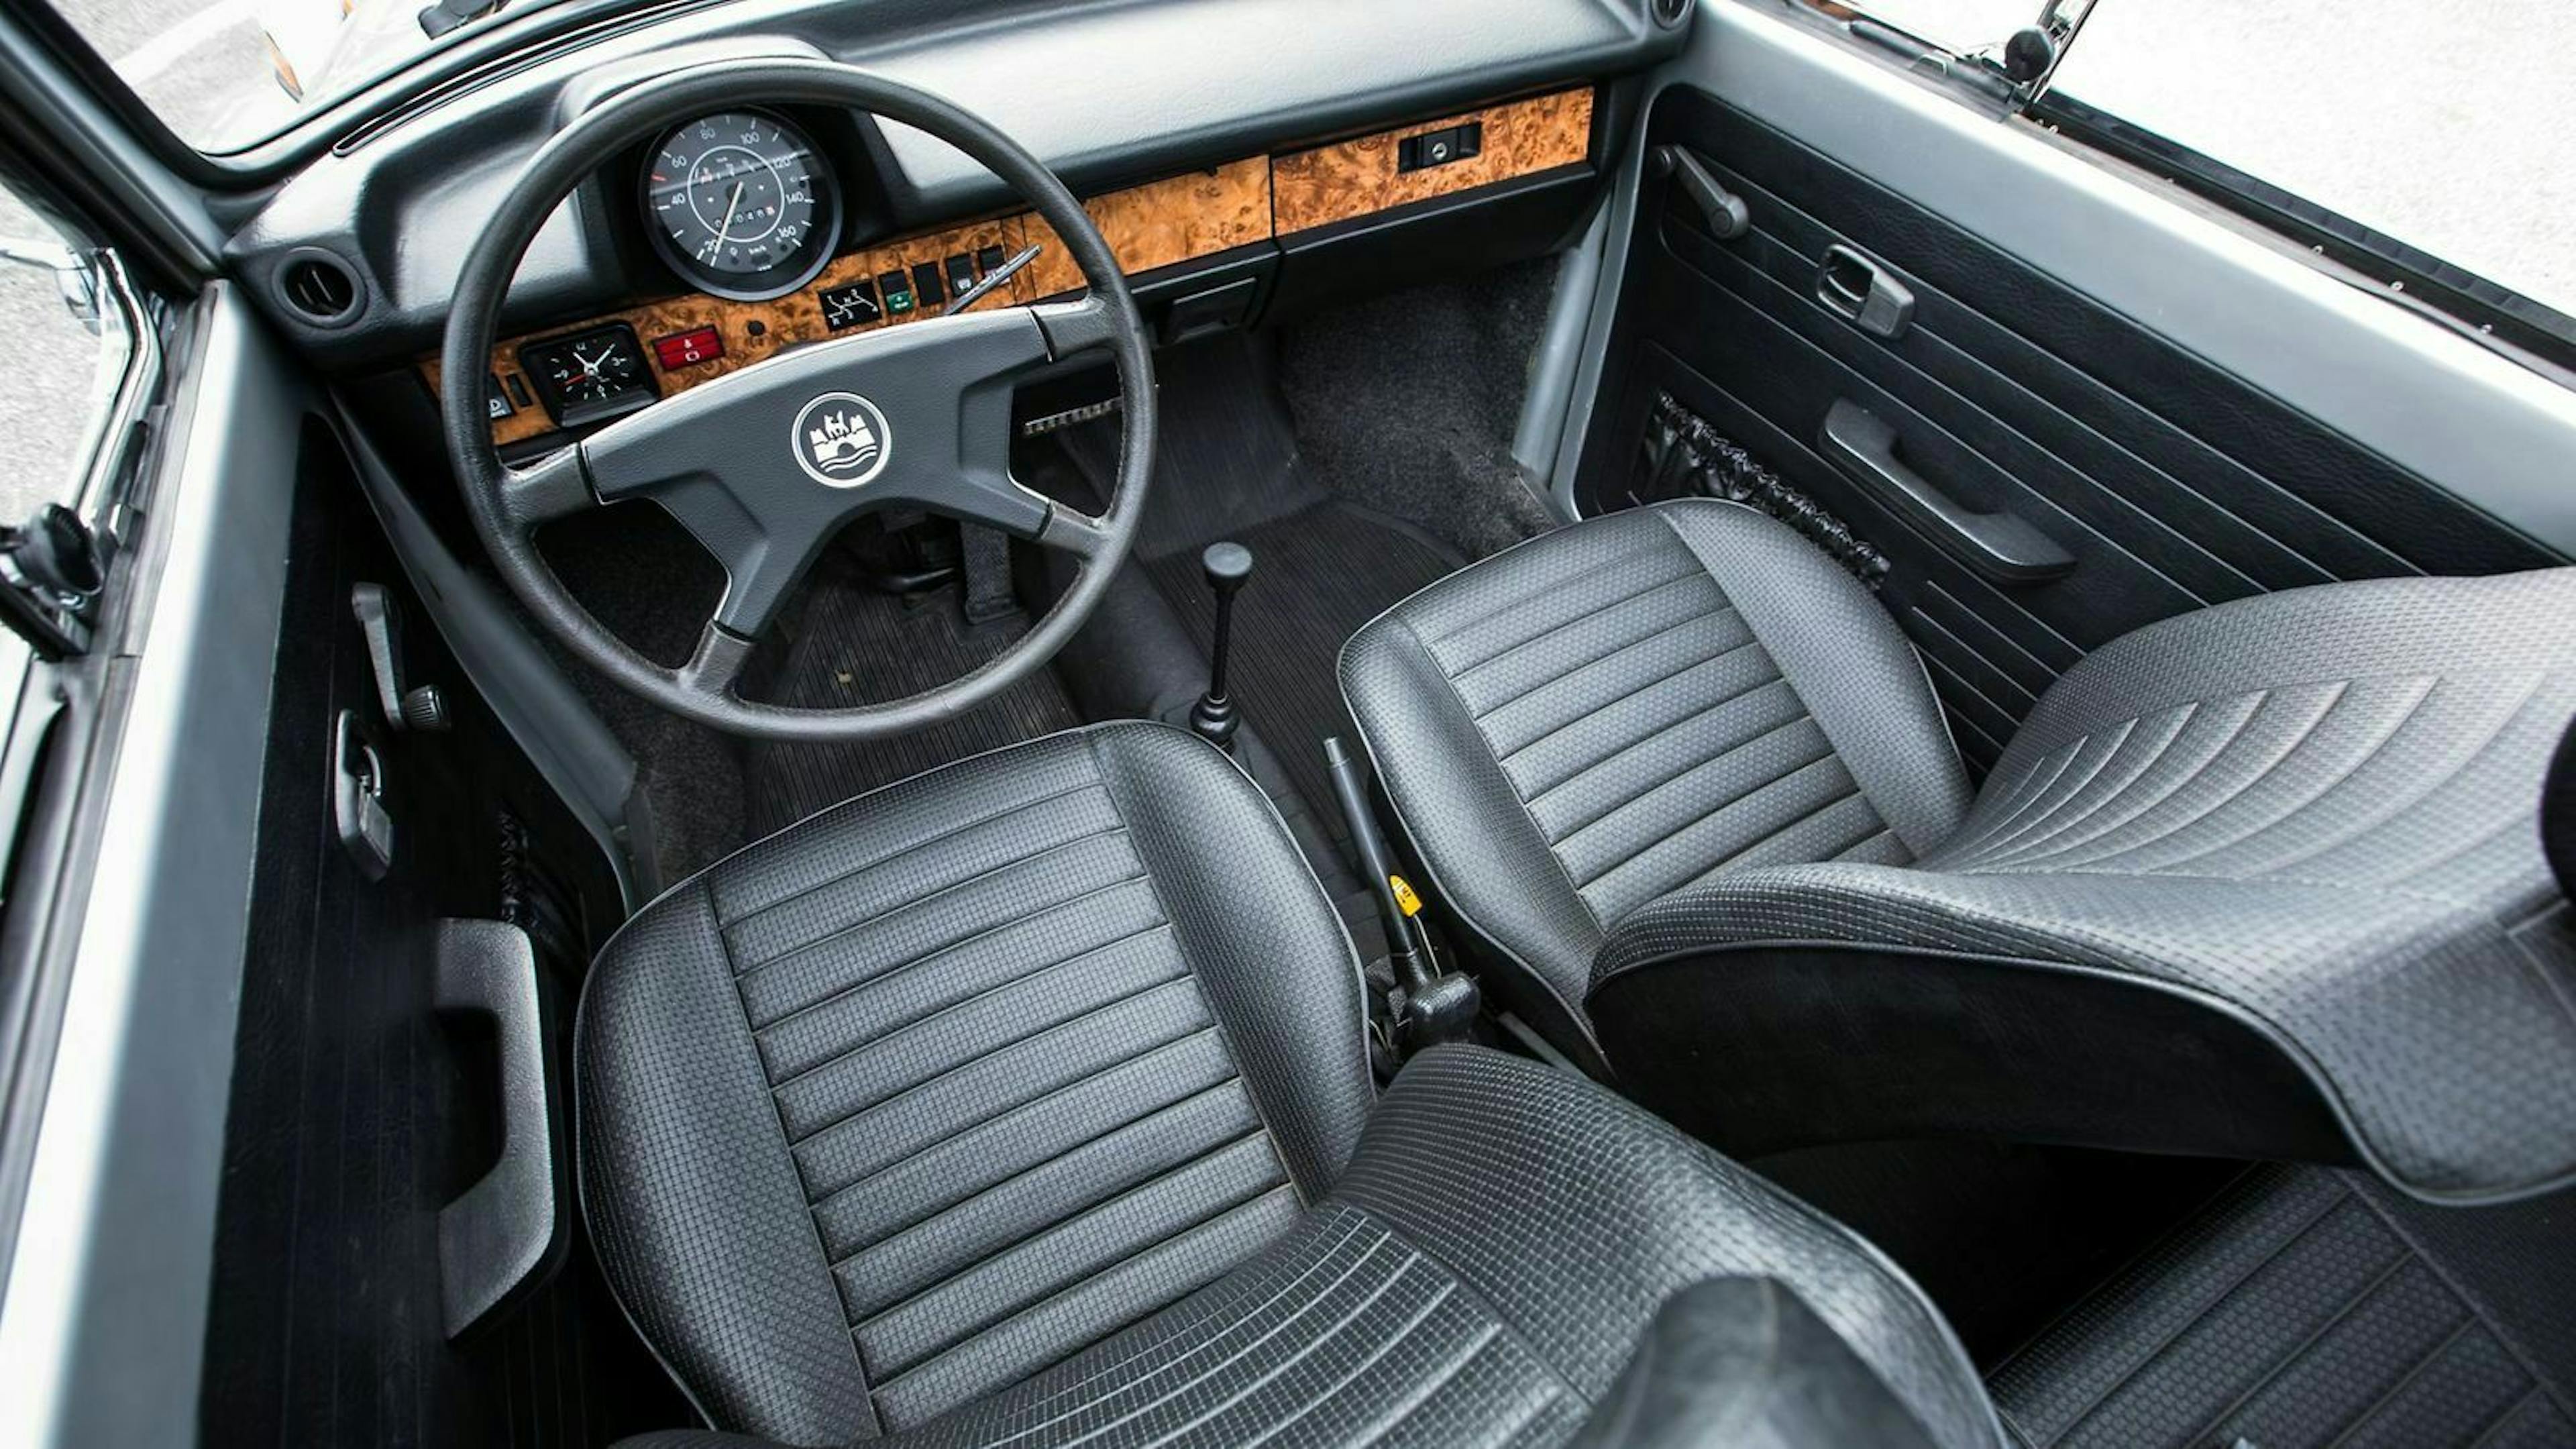 Zu sehen ist das Cockpit des VW Super Beetle Convertible